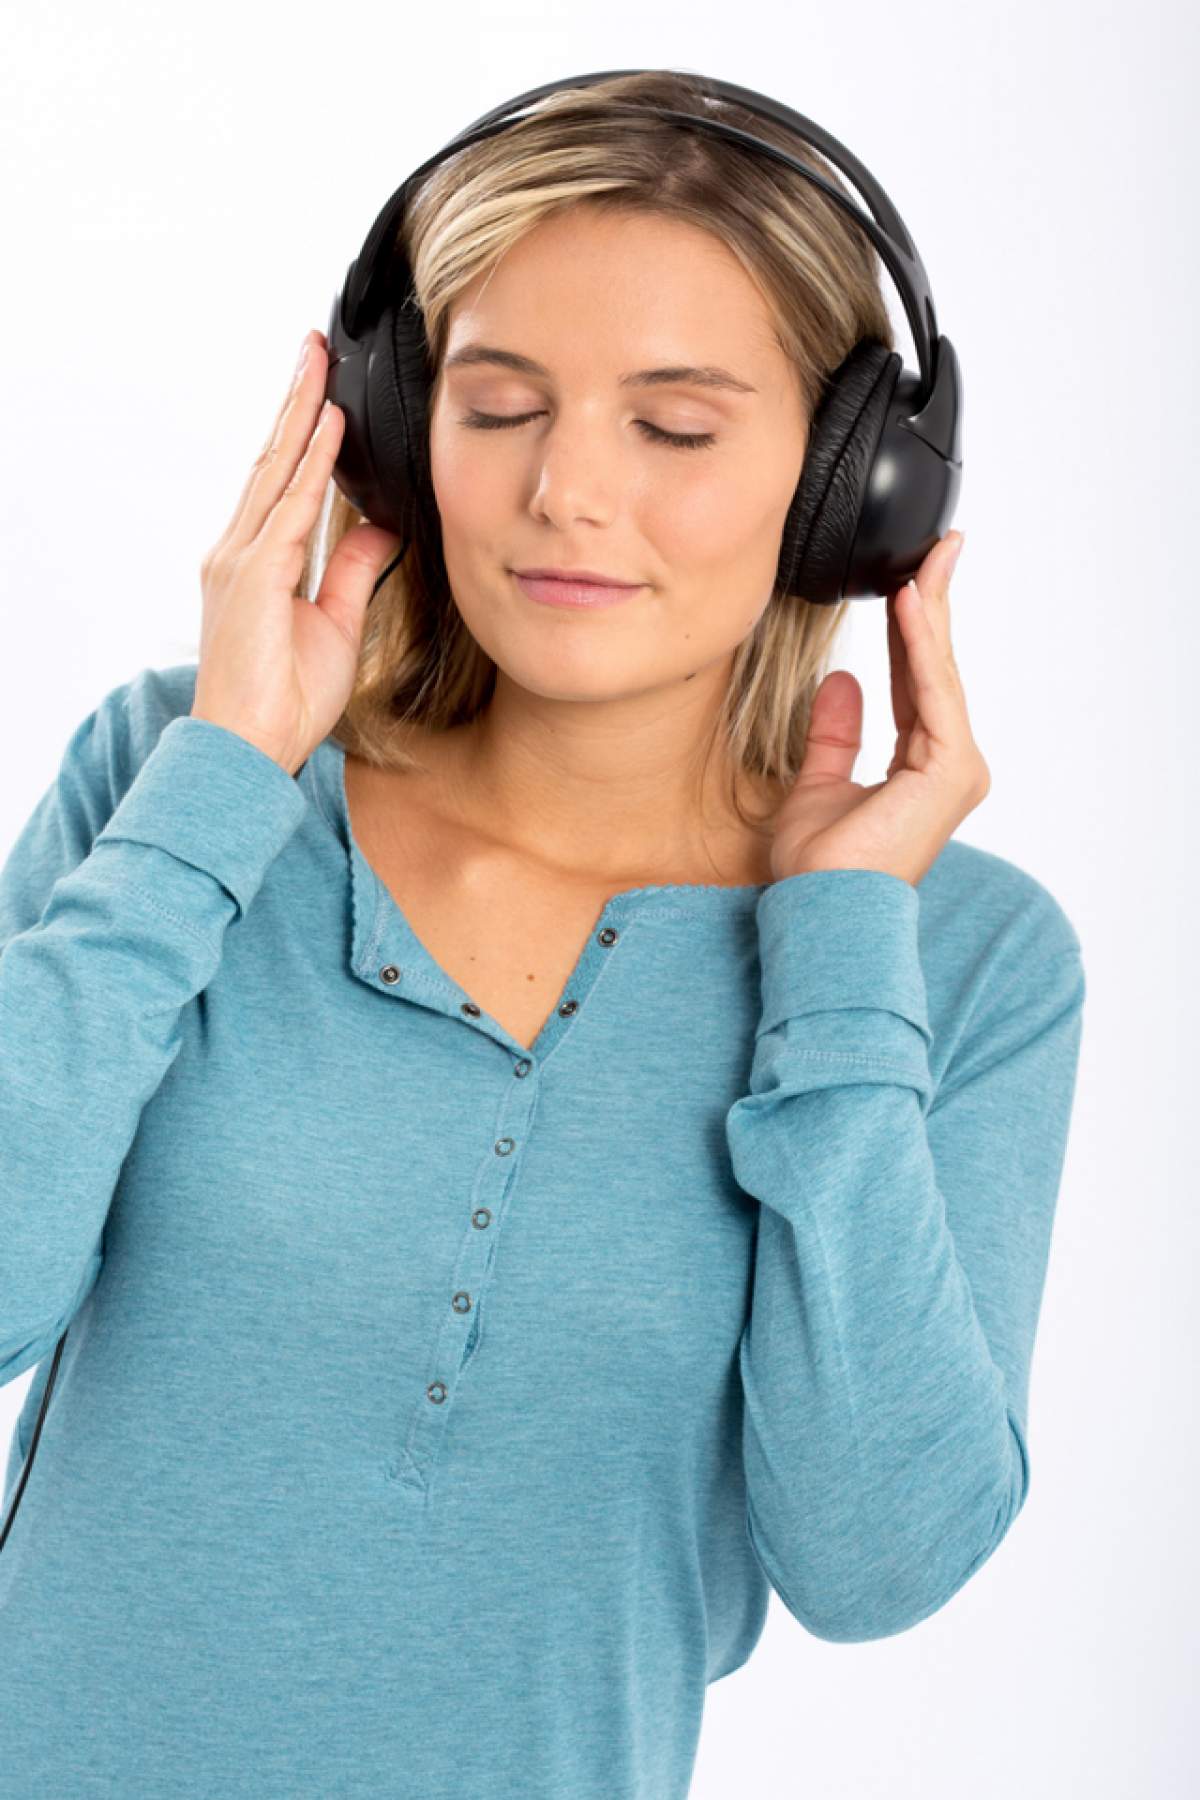 Muzica poate combate durerea de cap! Vezi ce melodii sunt recomandate